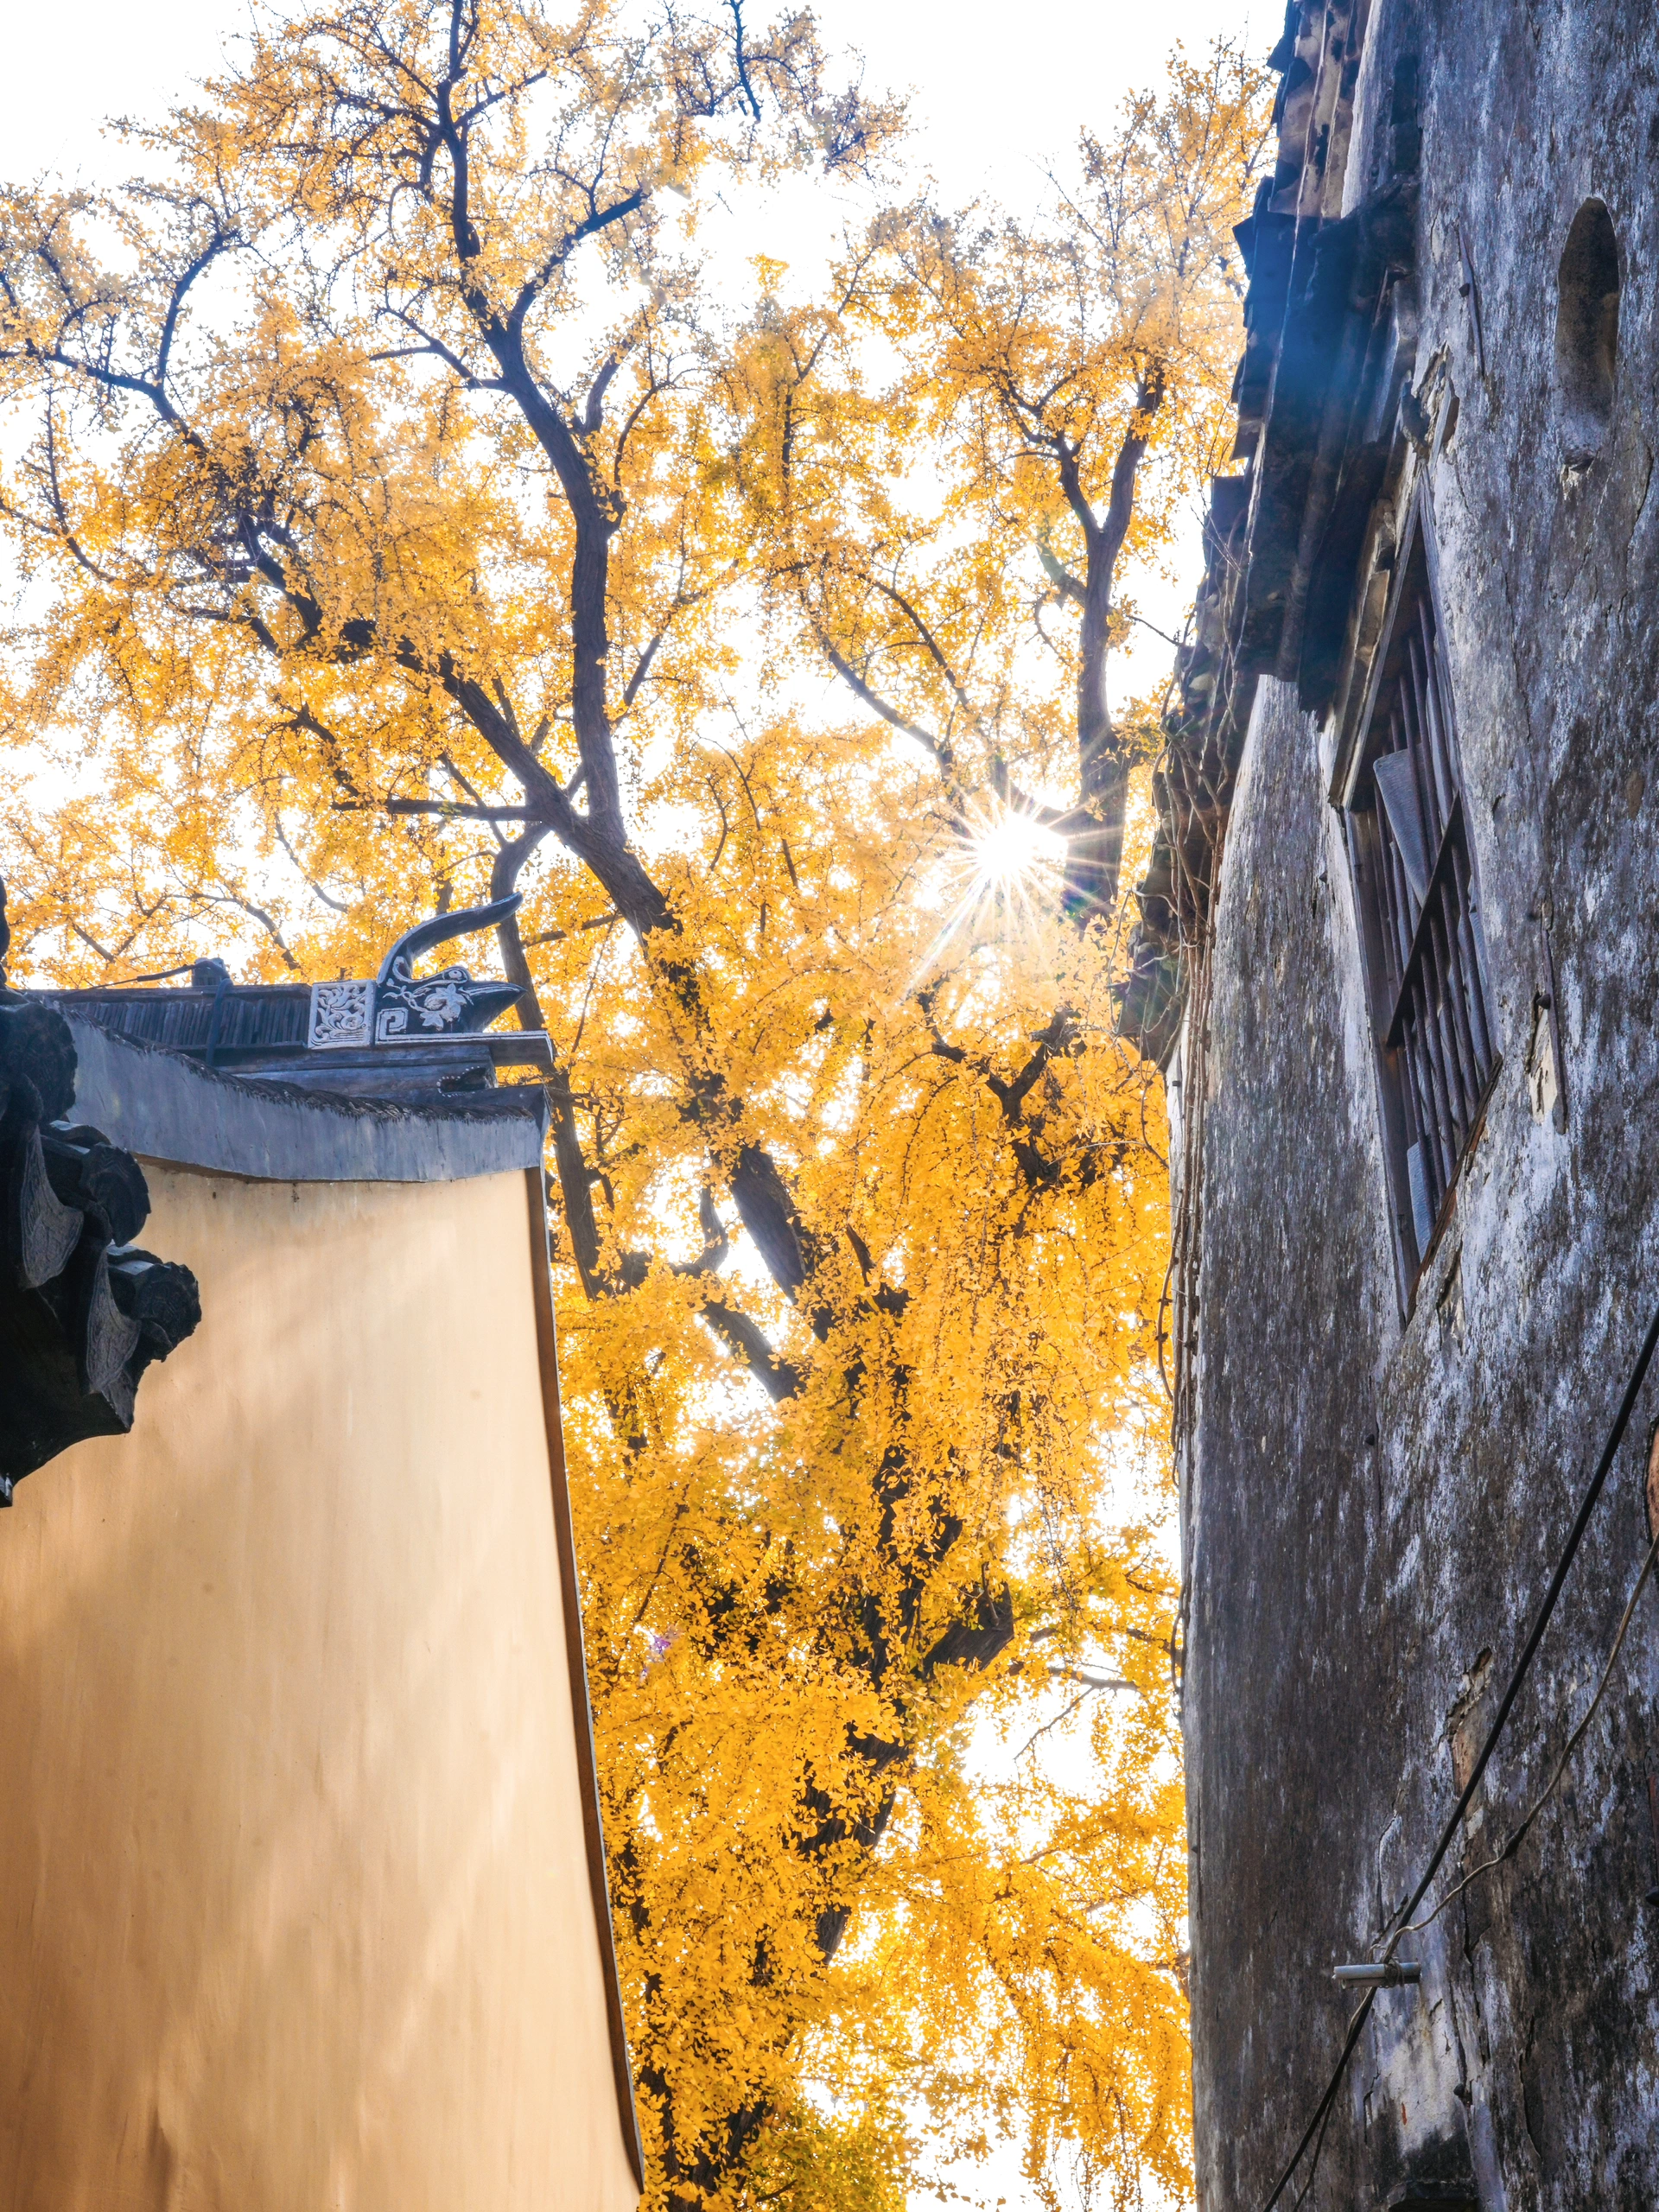 近日,苏州太平禅寺的一棵千年古银杏树在网络上引发了广泛关注